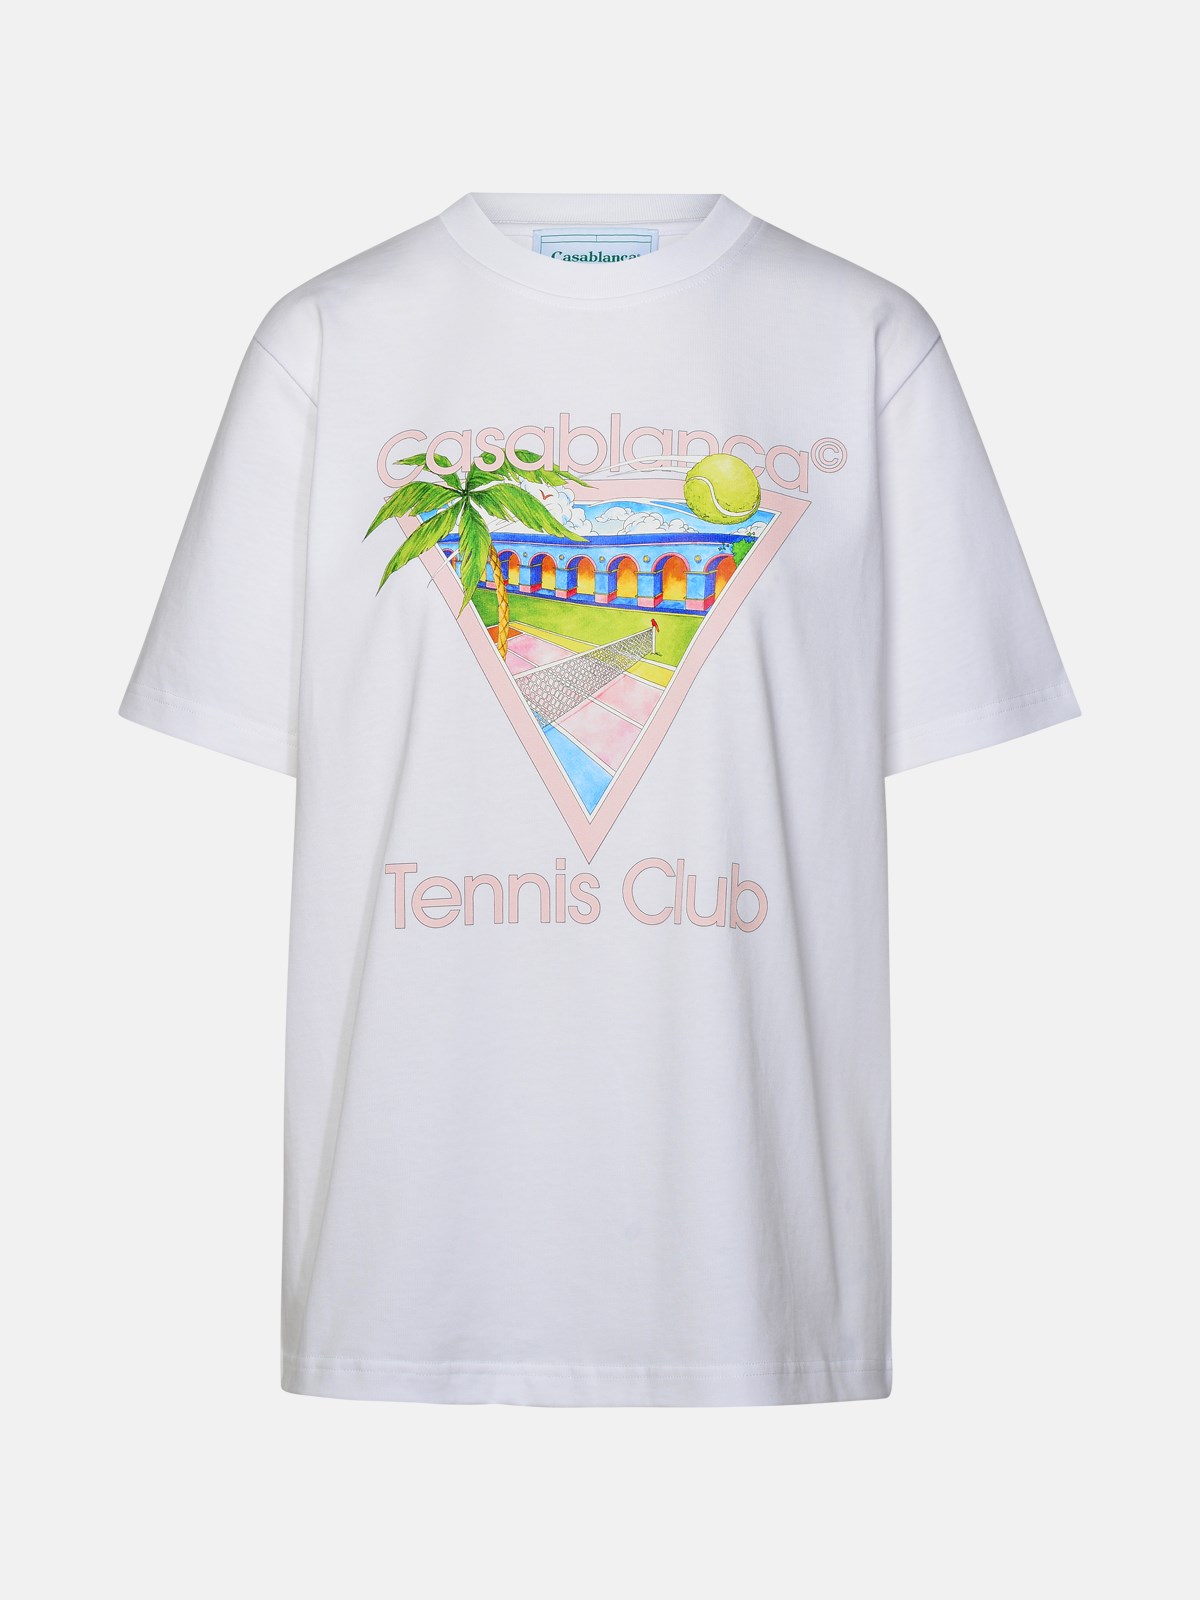 Casablanca 'tennis Club' White Organic Cotton T-shirt